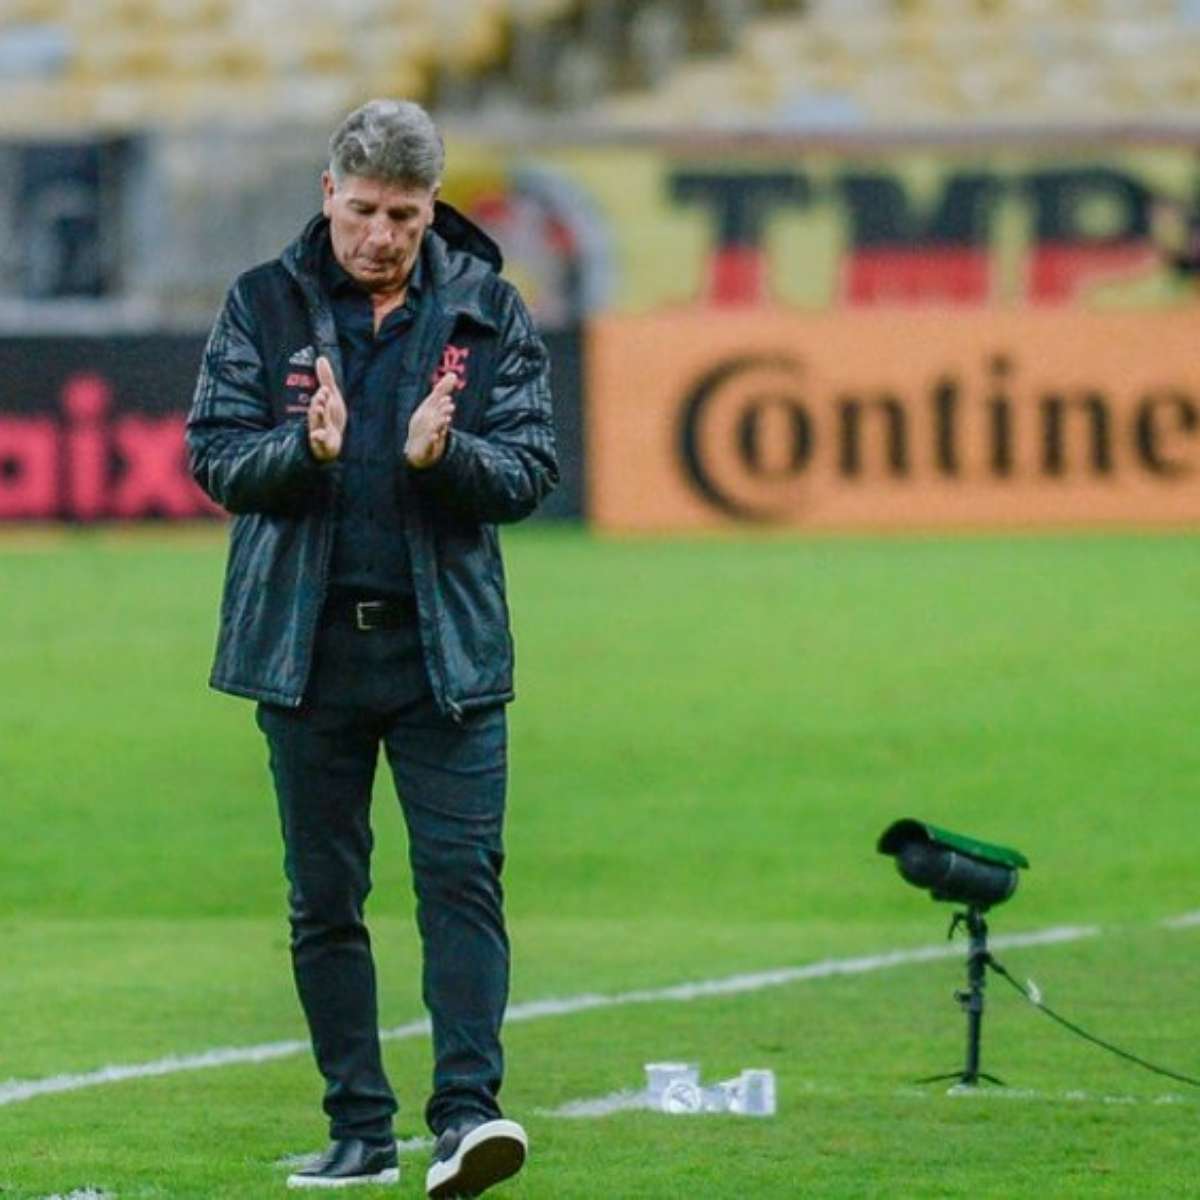 Colunistas opinam: Renato deve ser demitido antes da final da Libertadores?  - 28/10/2021 - UOL Esporte